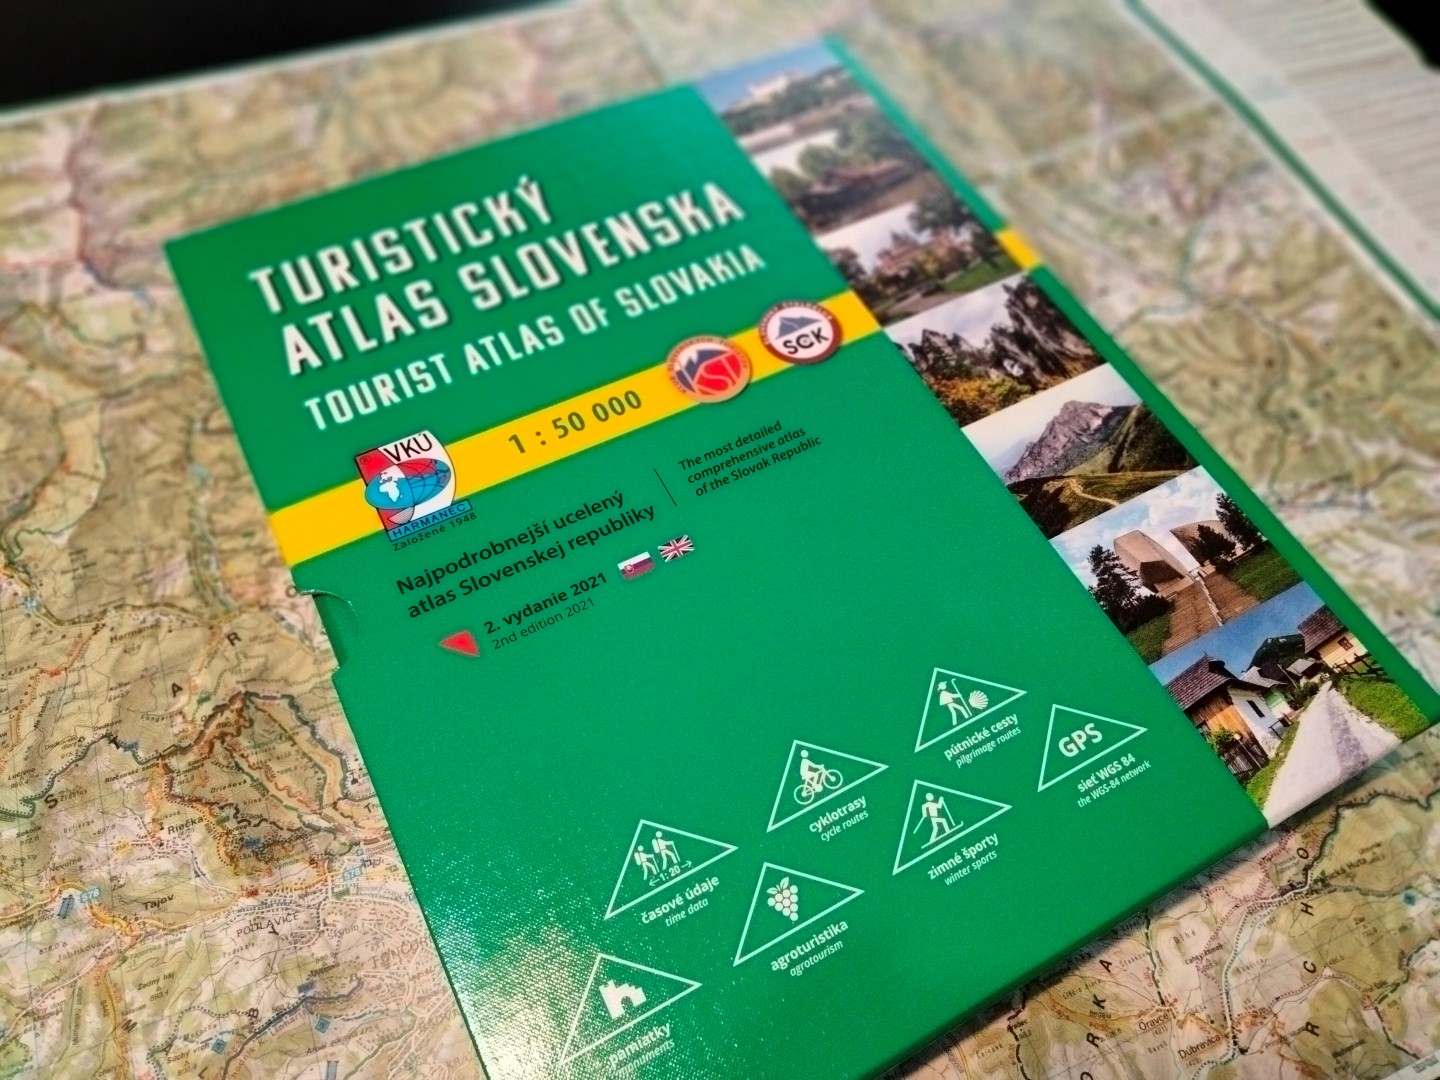 Turistický atlas Slovenska